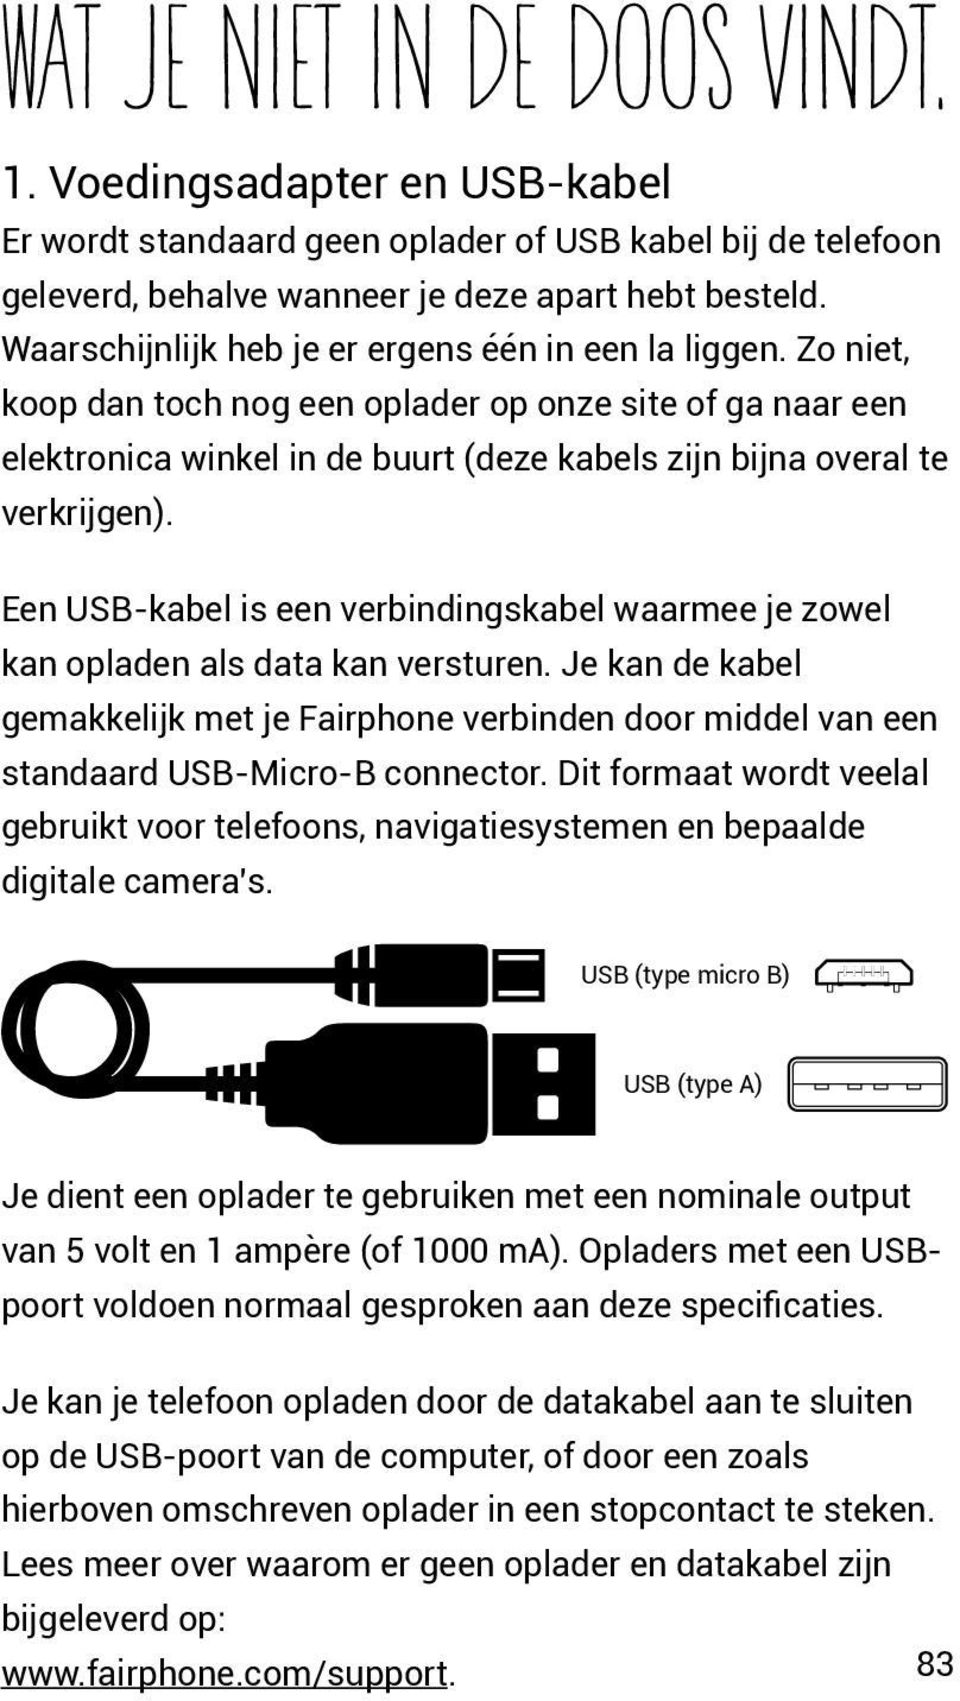 Een USB-kabel is een verbindingskabel waarmee je zowel kan opladen als data kan versturen. Je kan de kabel gemakkelijk met je Fairphone verbinden door middel van een standaard USB-Micro-B connector.